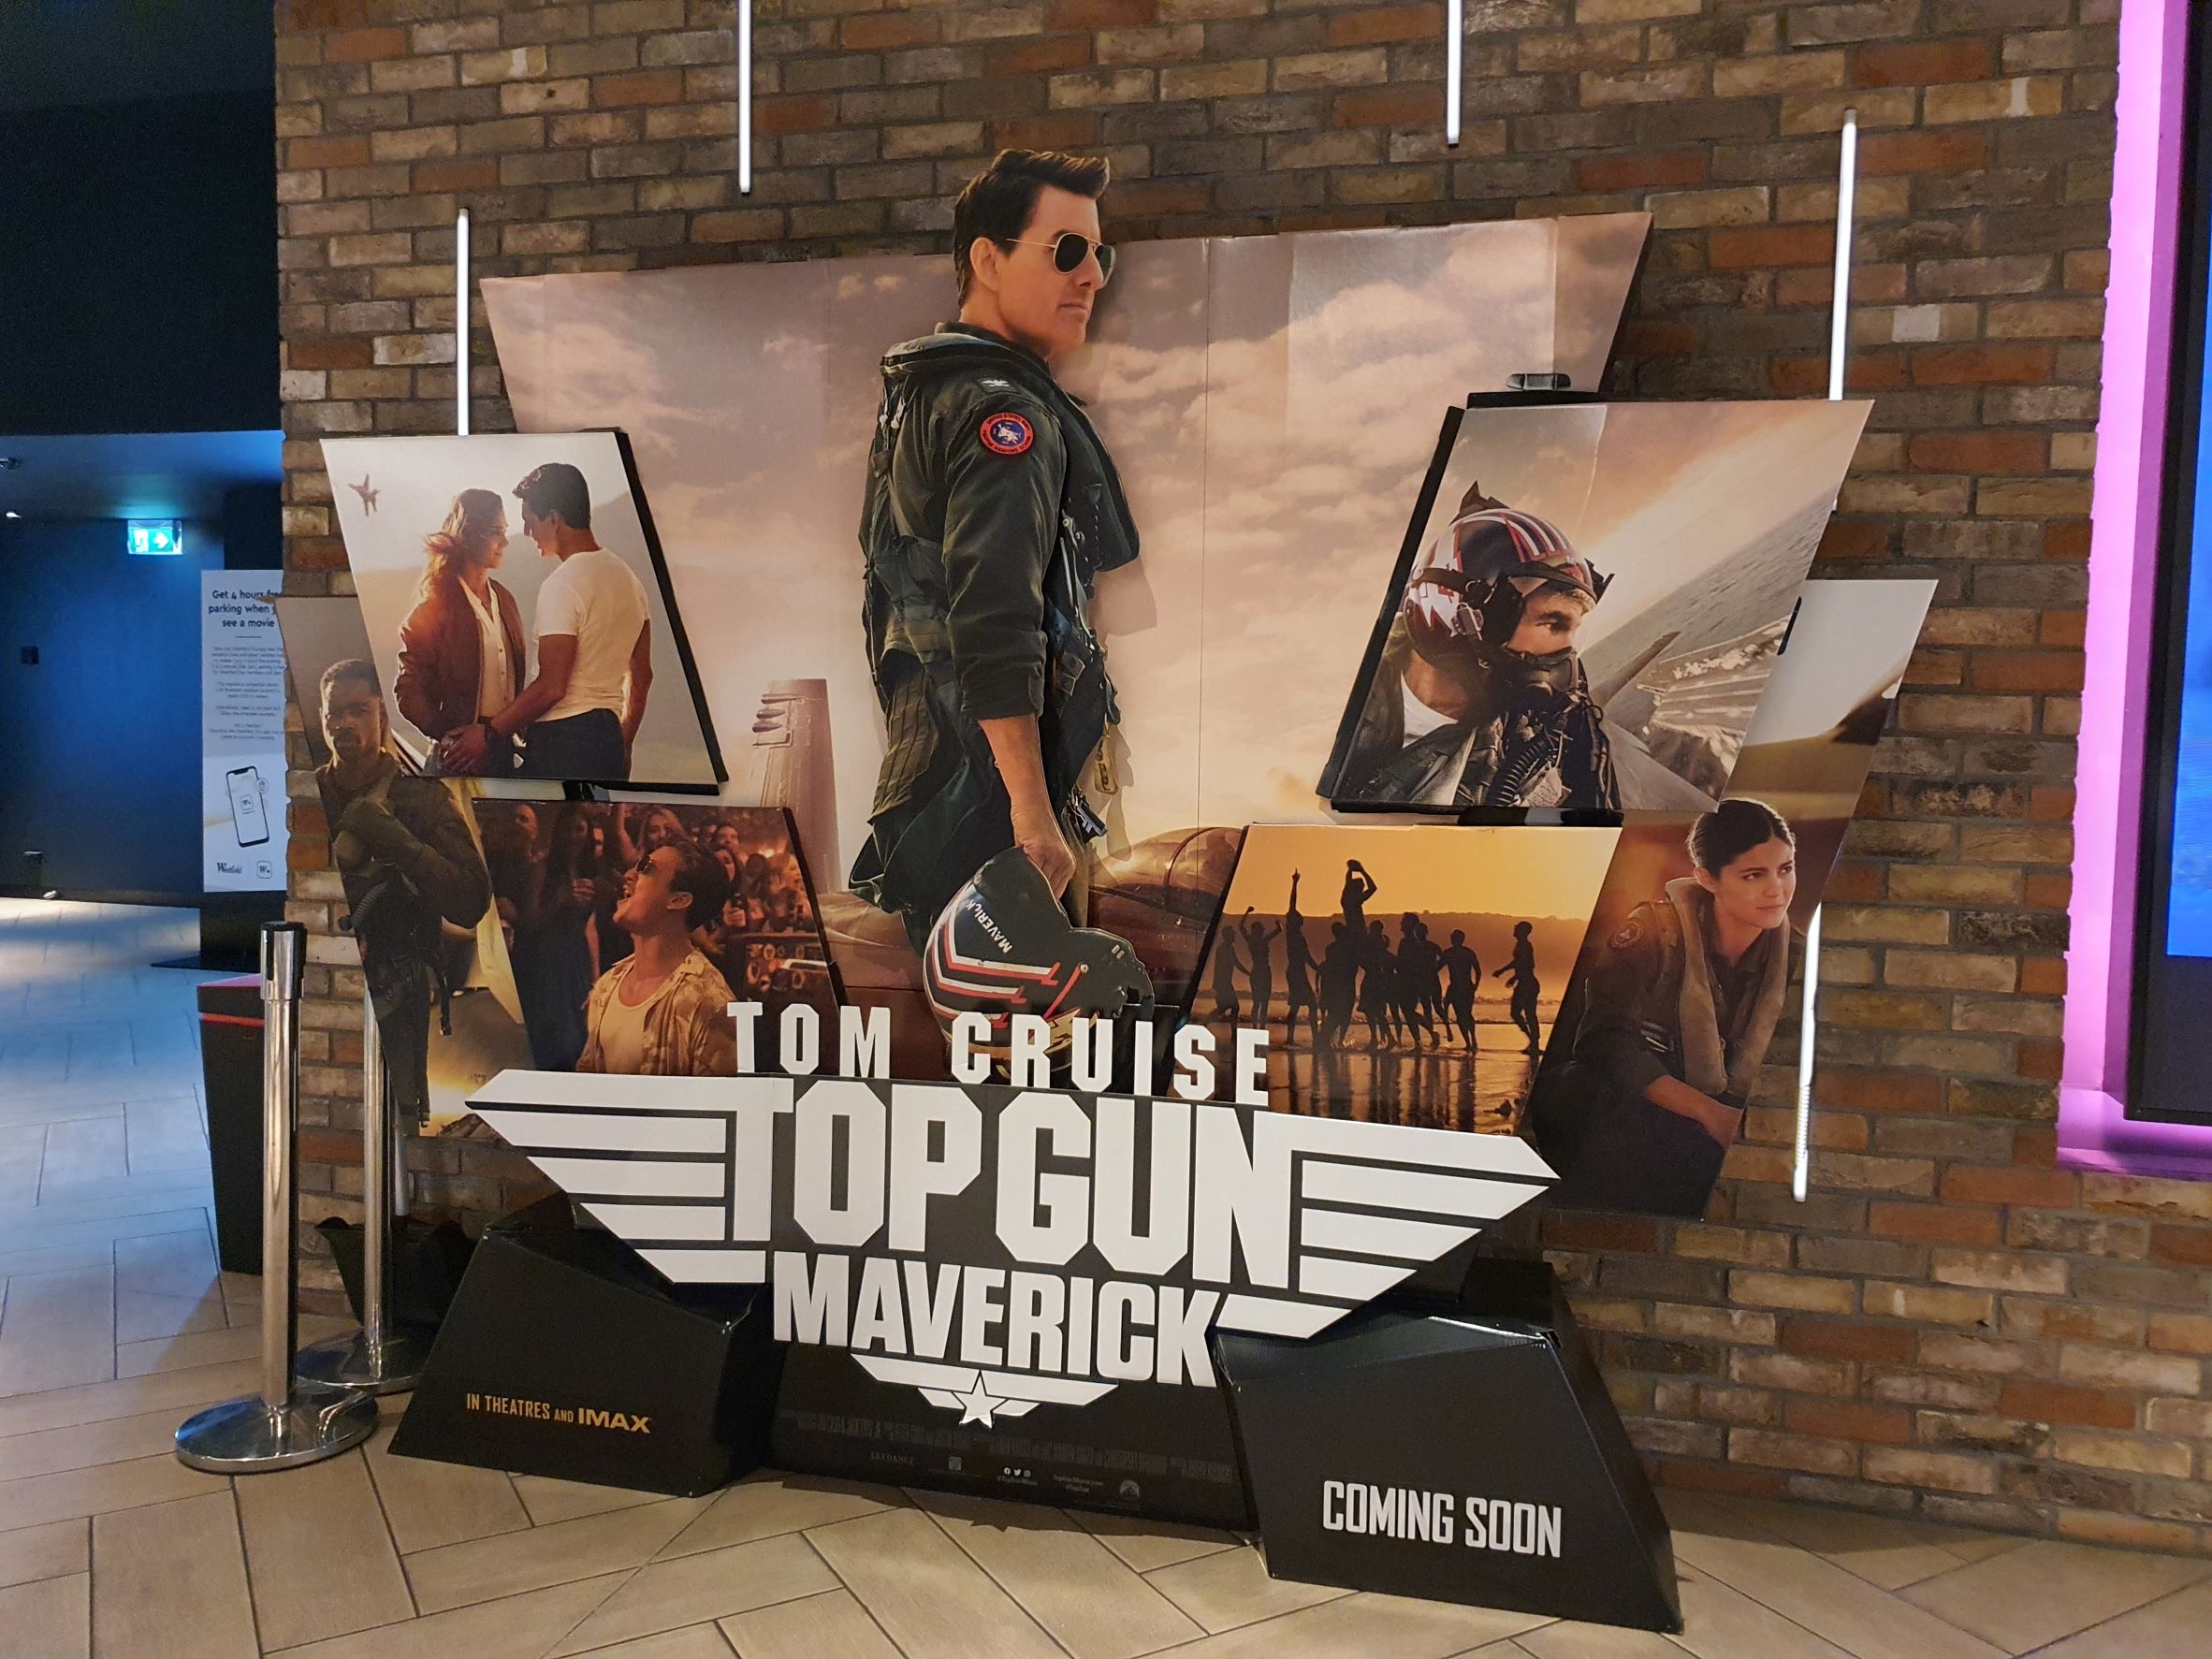 Top Gun Maverick promotional material in the cinemas